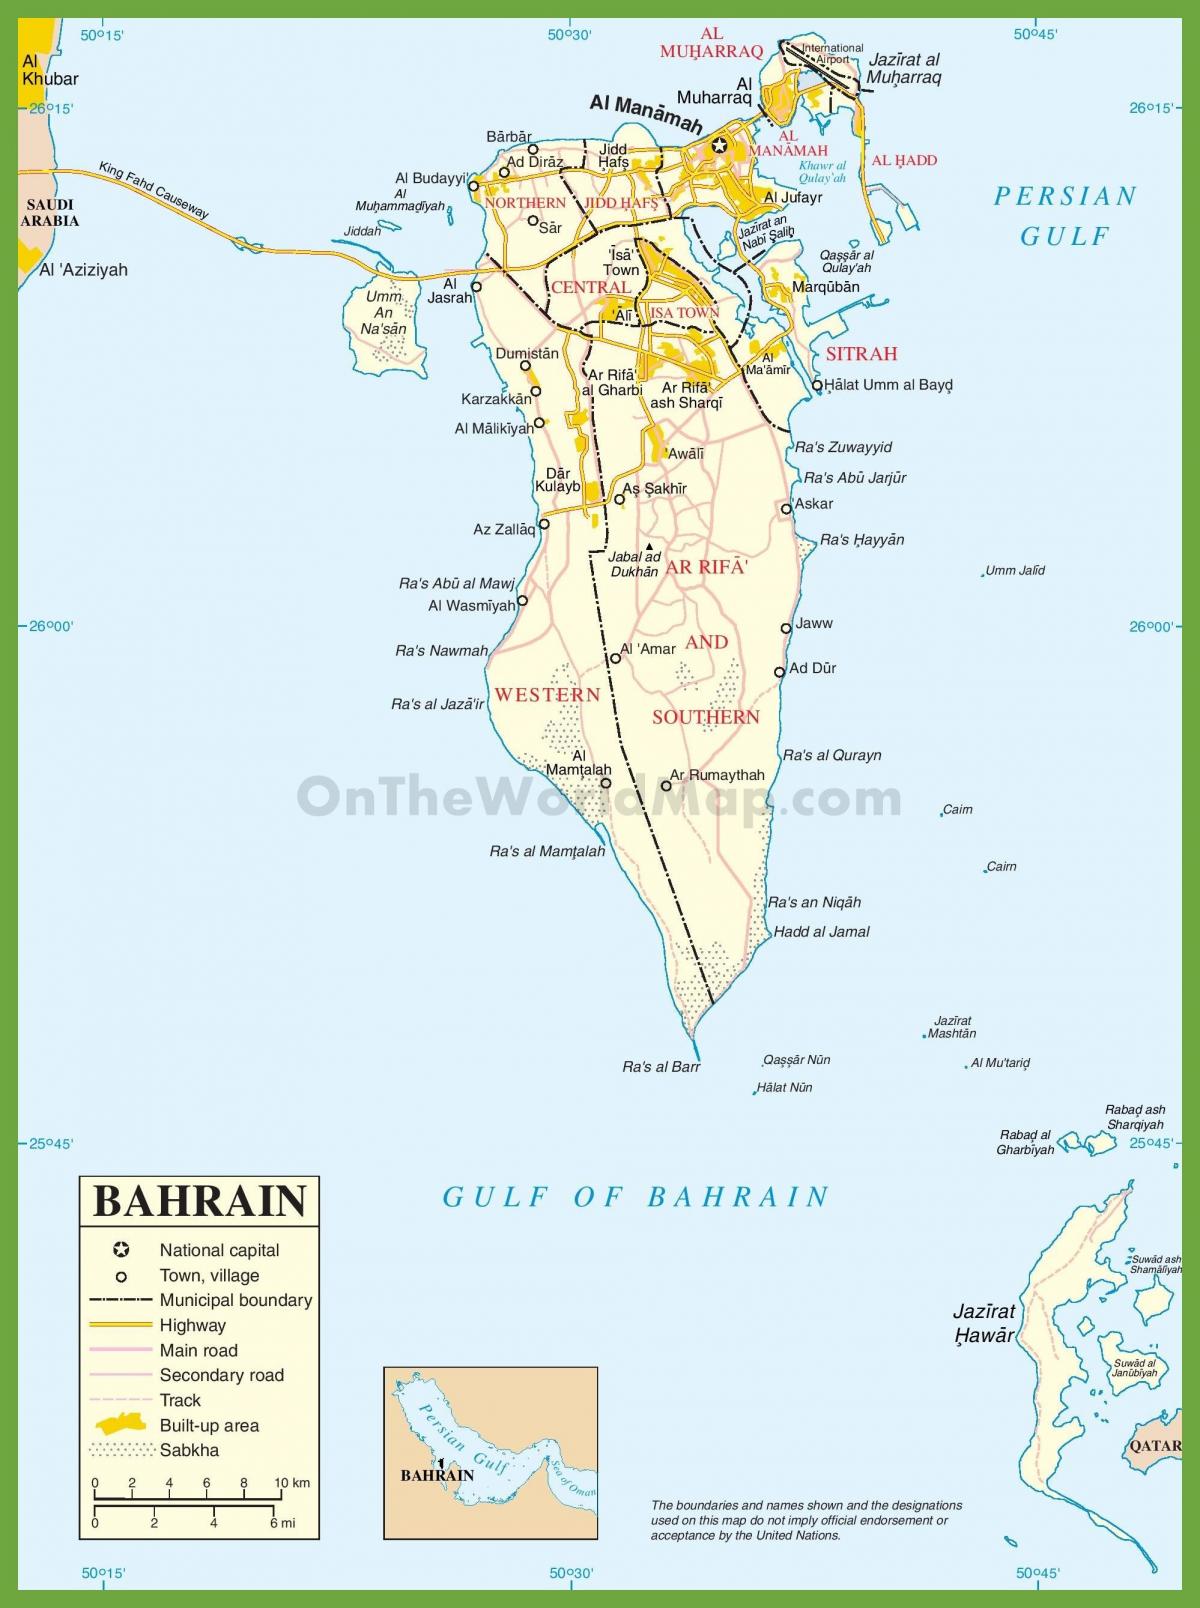 बहरीन के शहरों के नक्शे